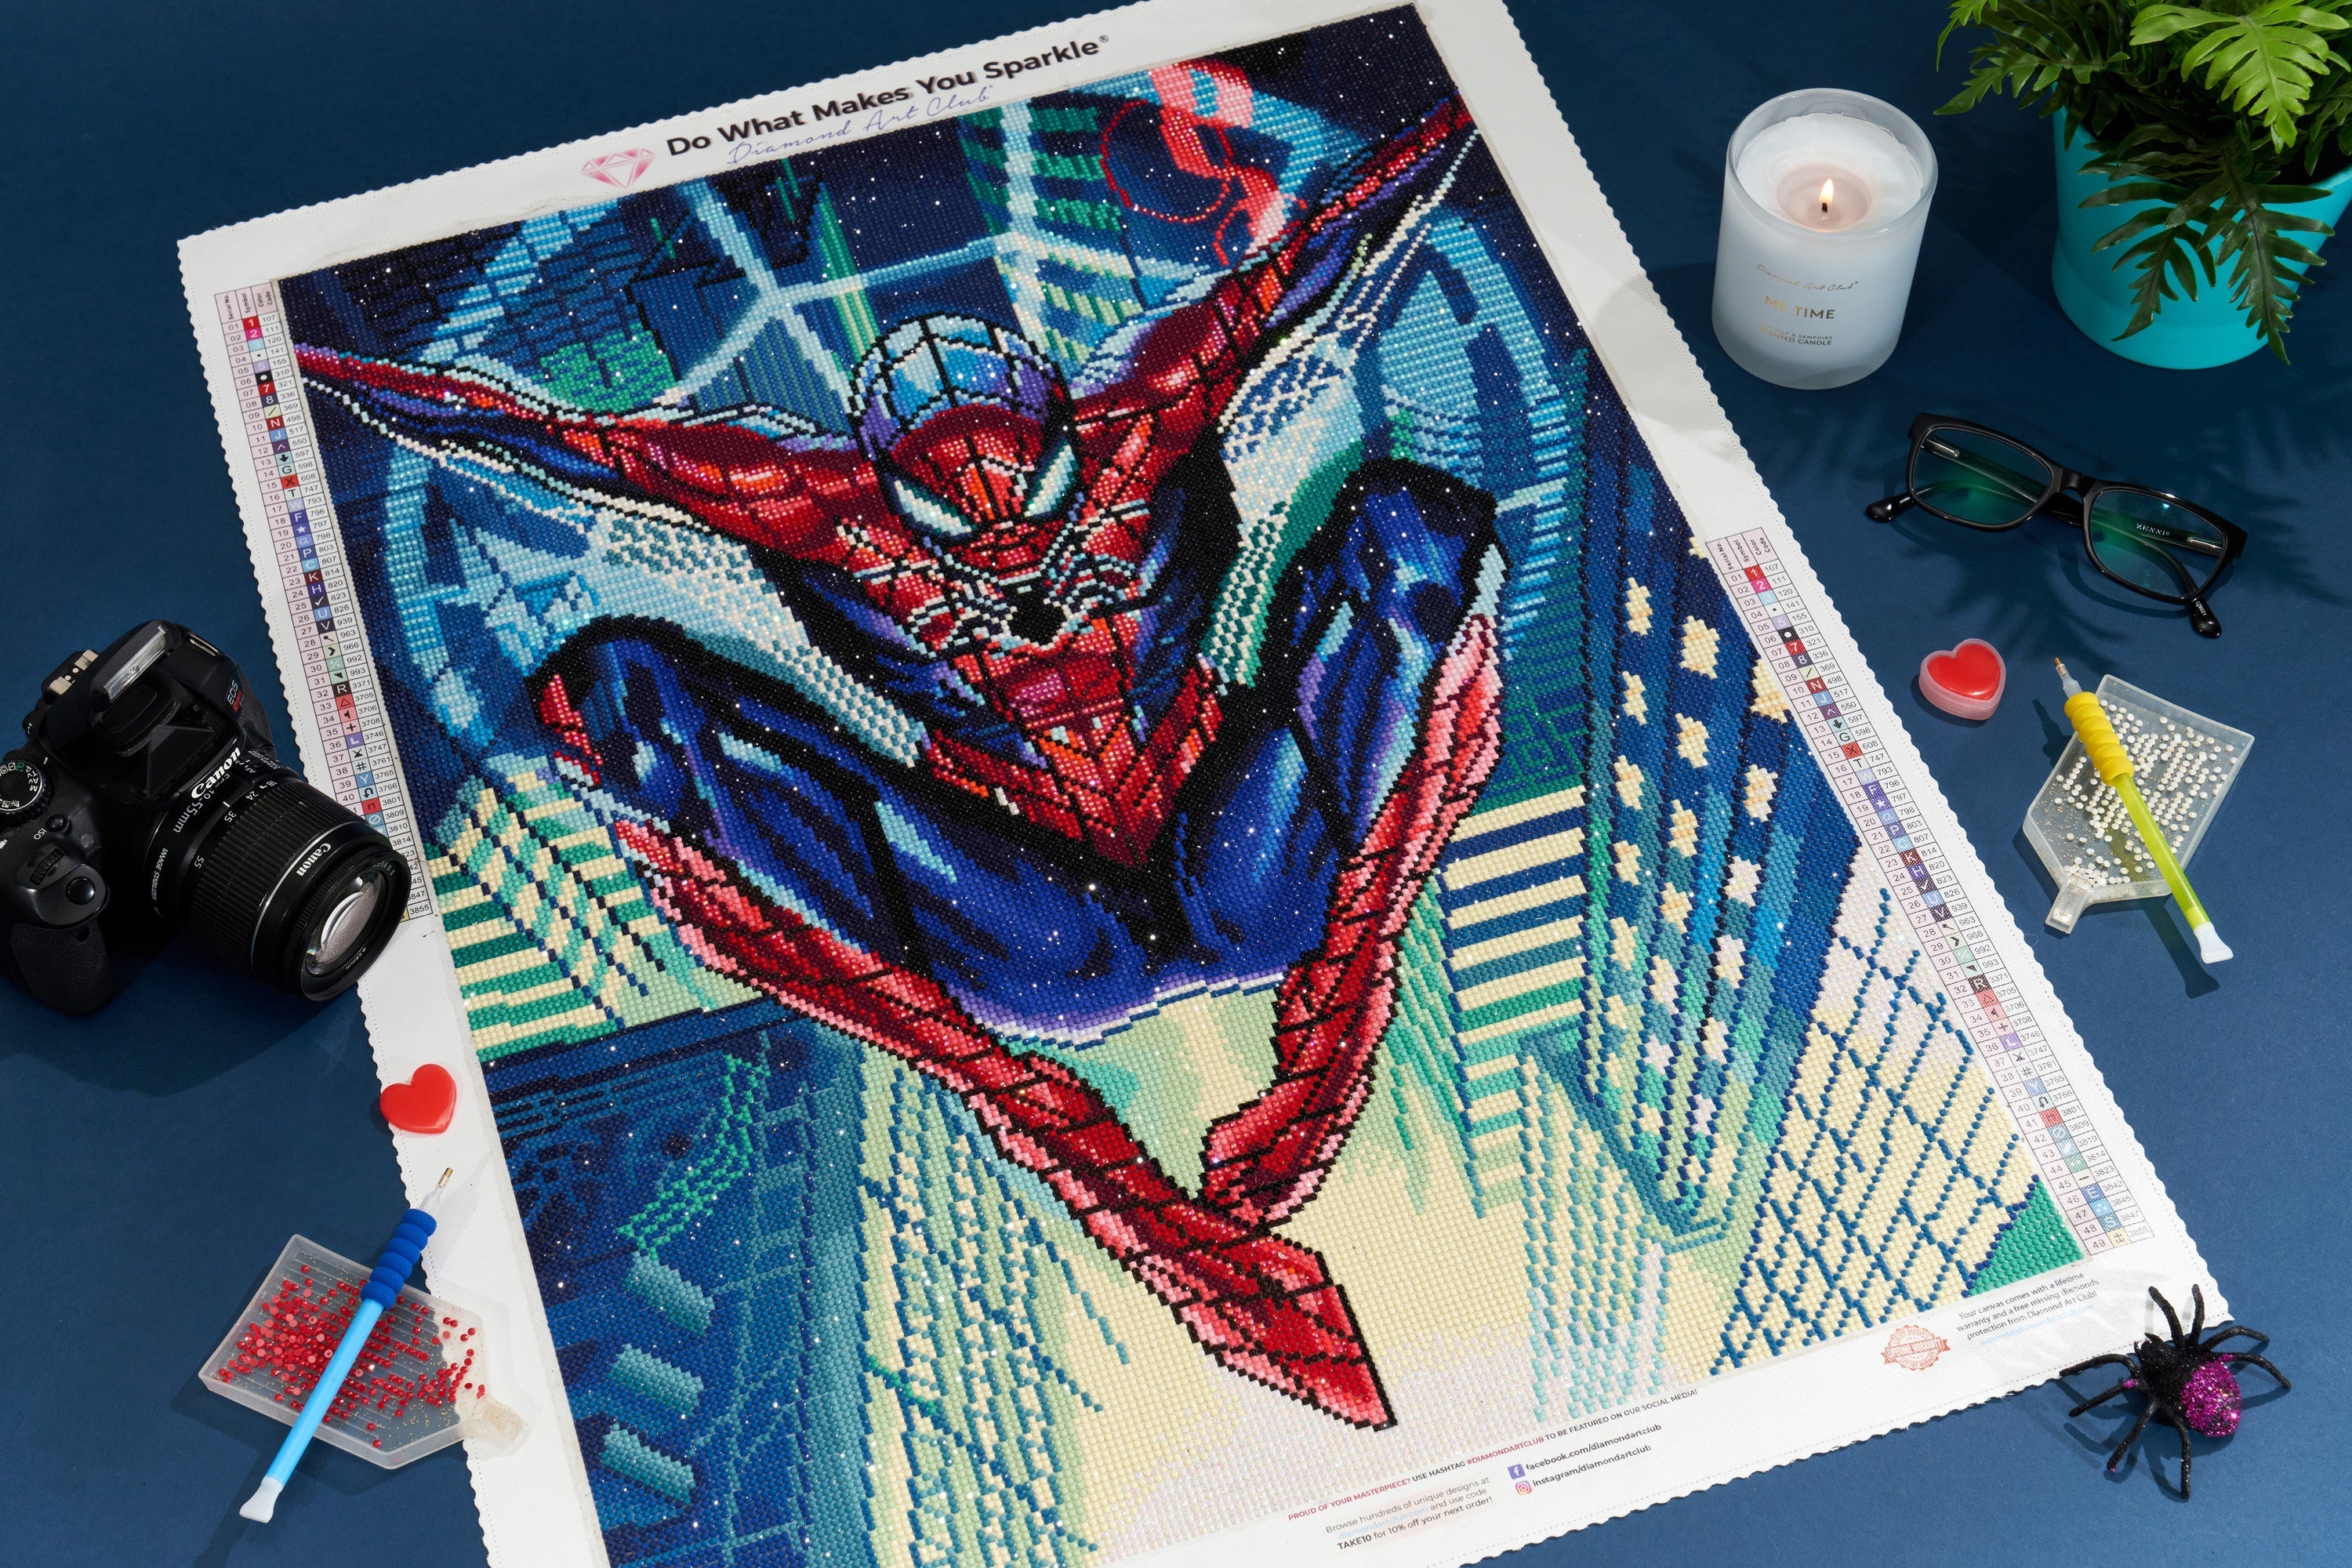 Spider Man - 5D Diamond Painting - DiamondByNumbers - Diamond Painting art